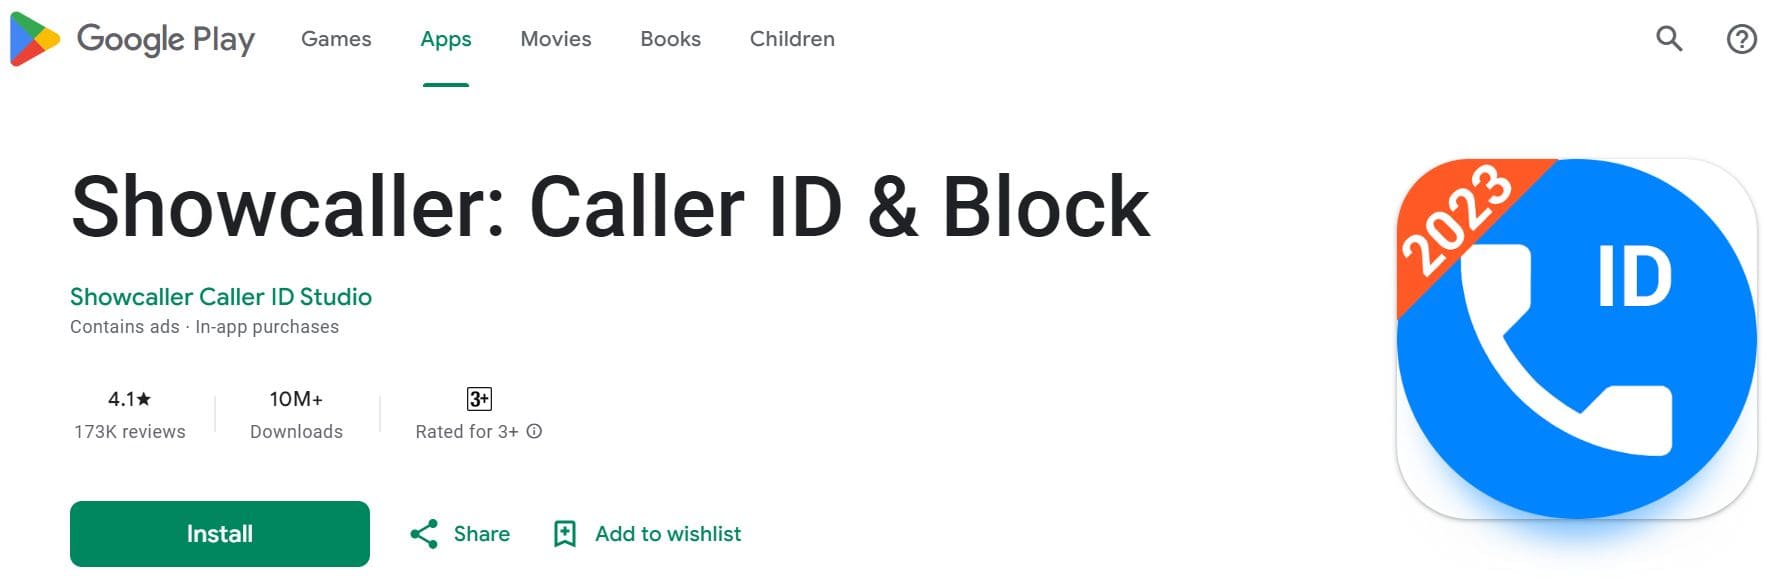 Vista de la aplicación Showcaller: Caller ID & Block en Playmarket con información sobre la aplicación y un botón de instalación